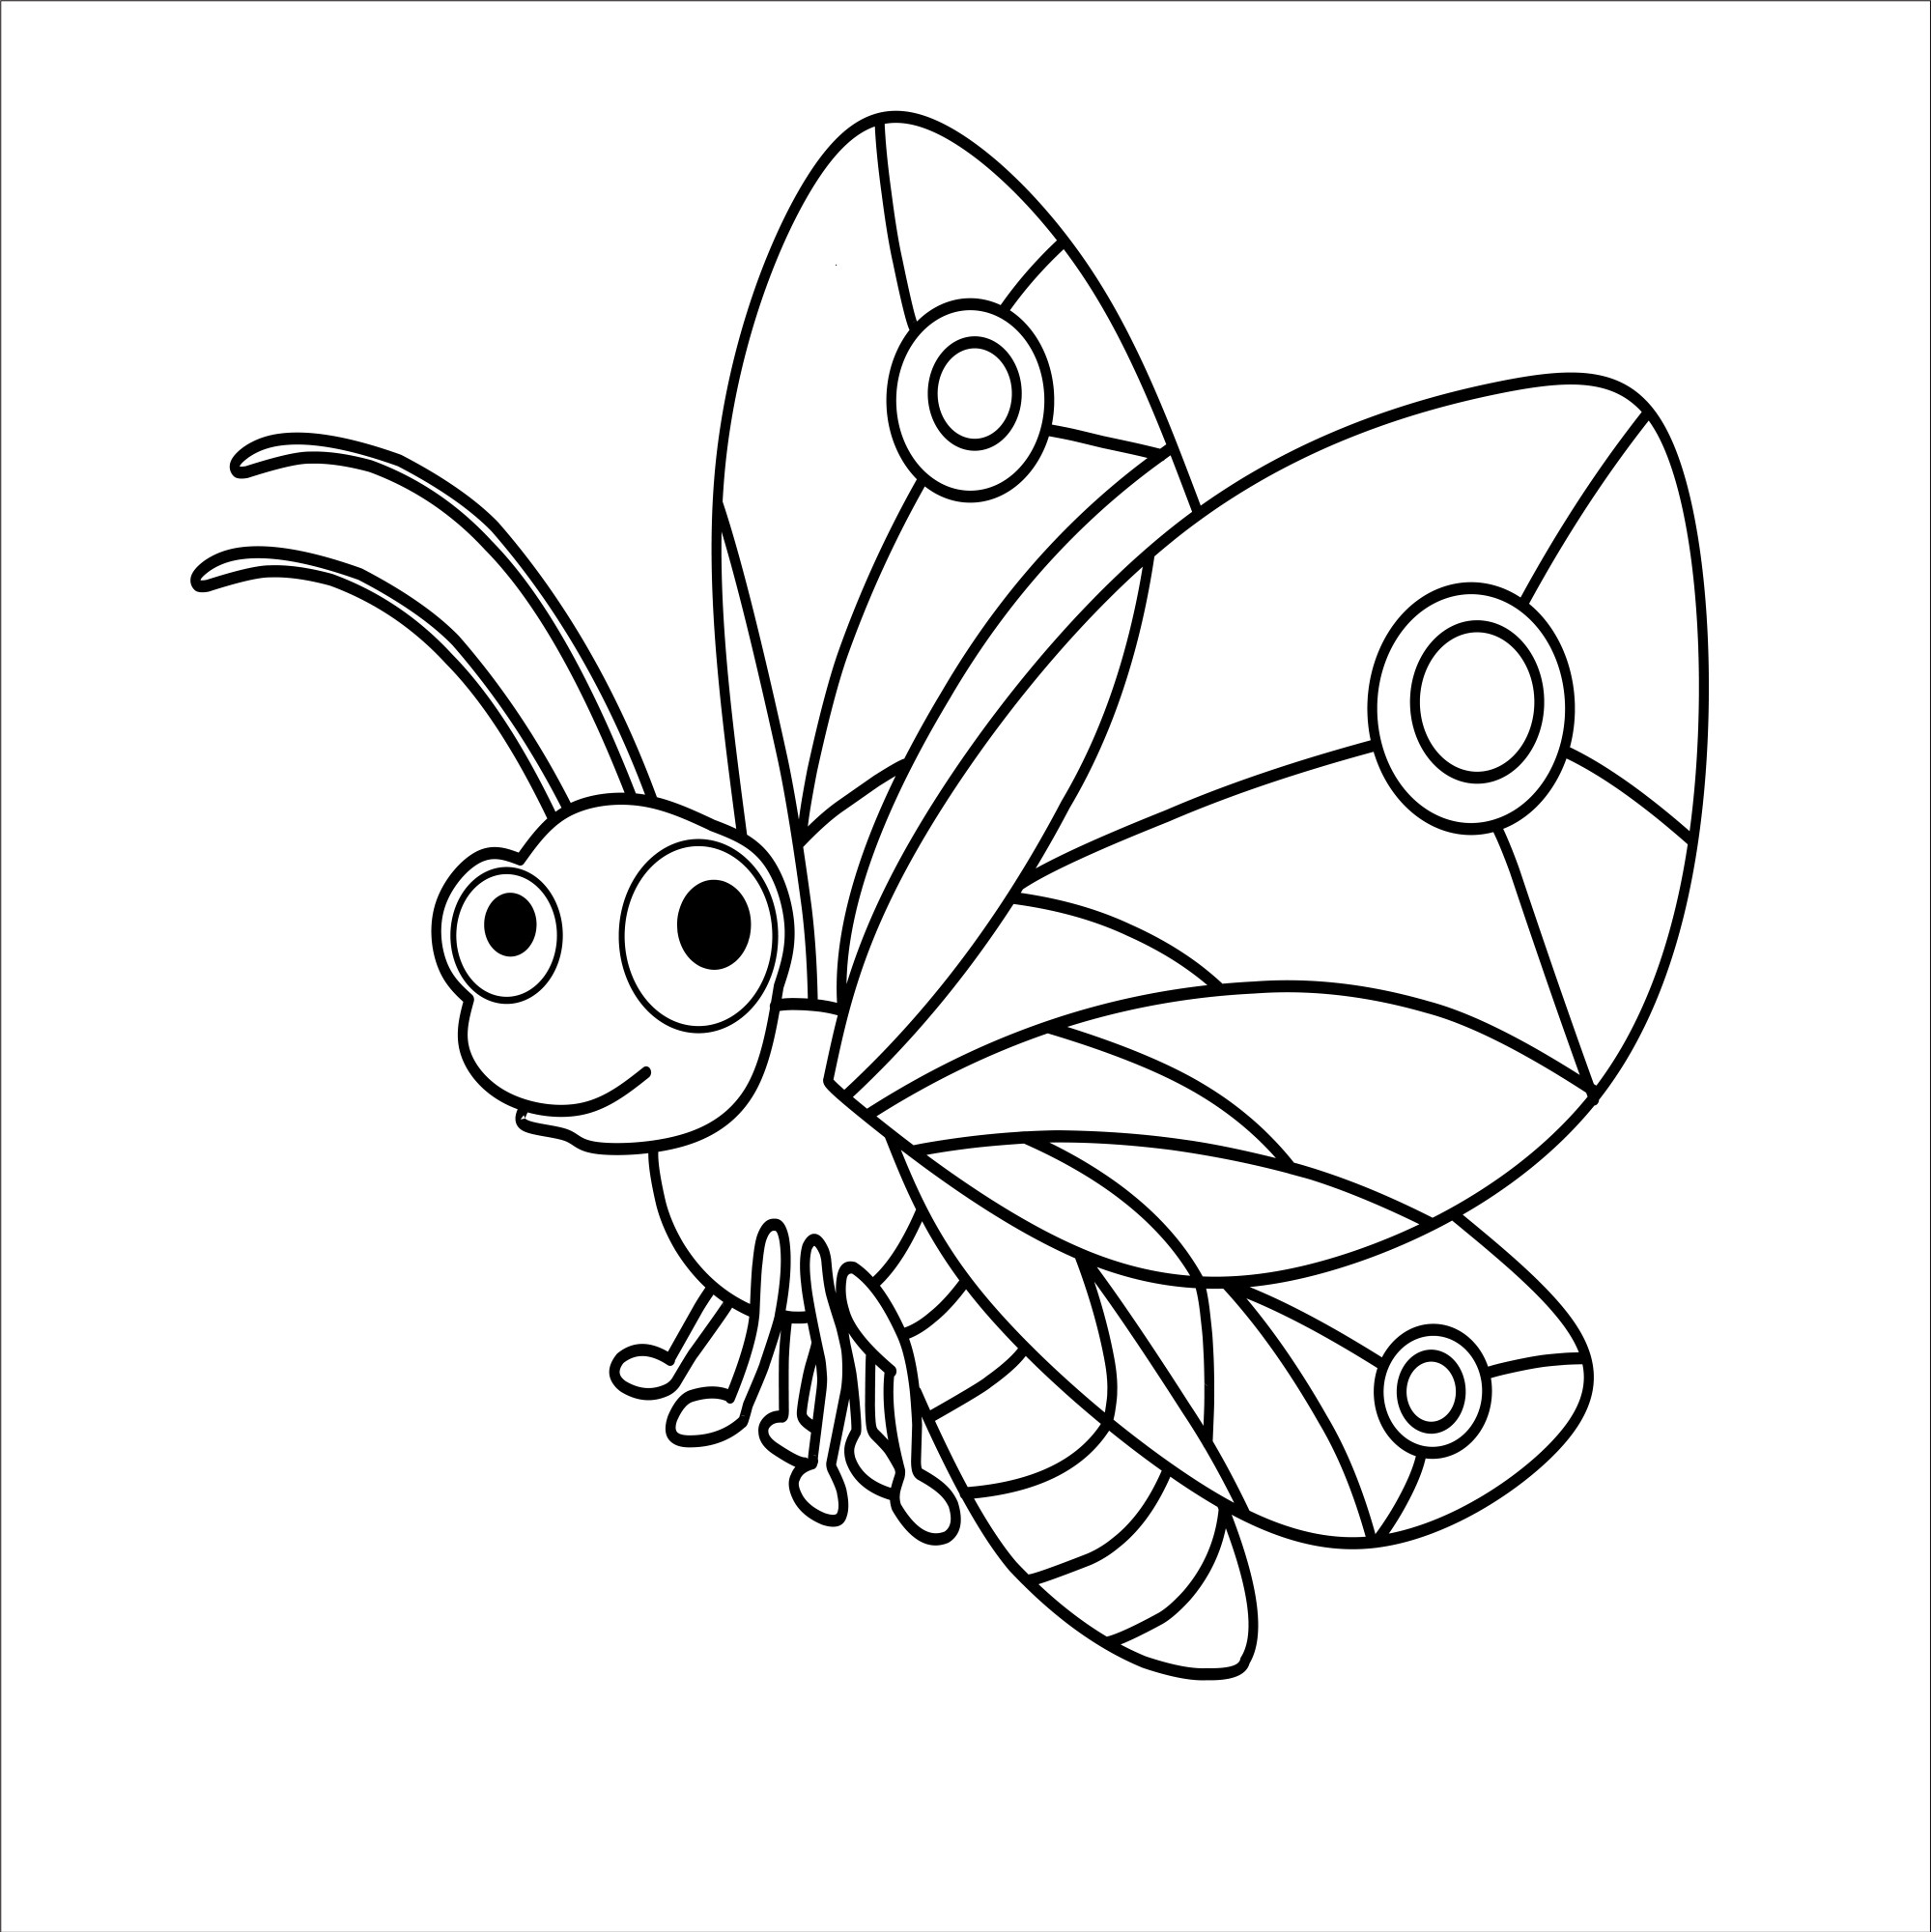 Раскраска для детей: радужная бабочка с удивленными глазами